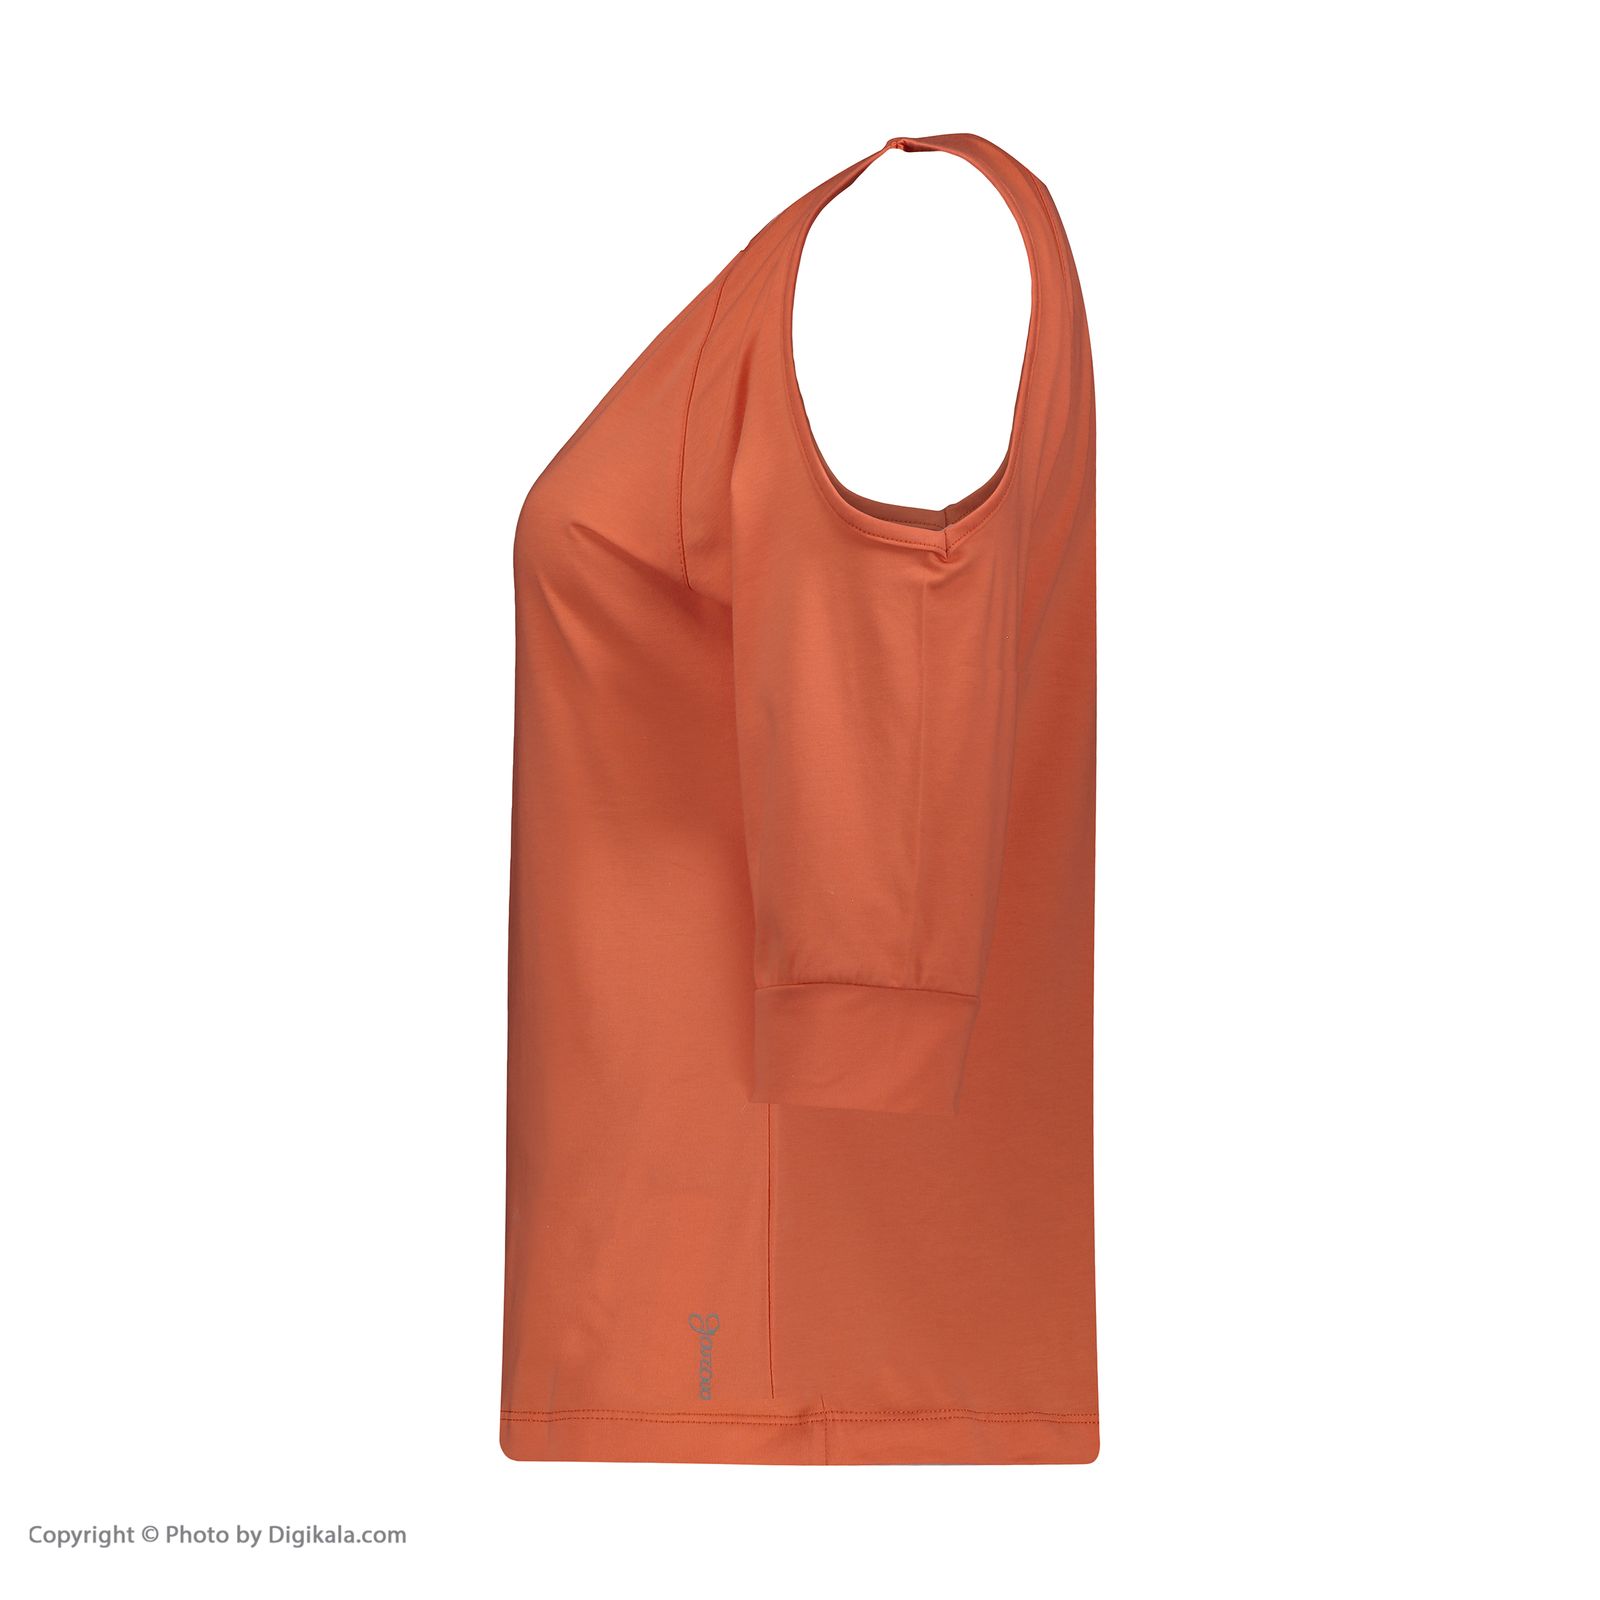 ست تی شرت و شلوارک زنانه گارودی مدل 1110307101-26 -  - 3